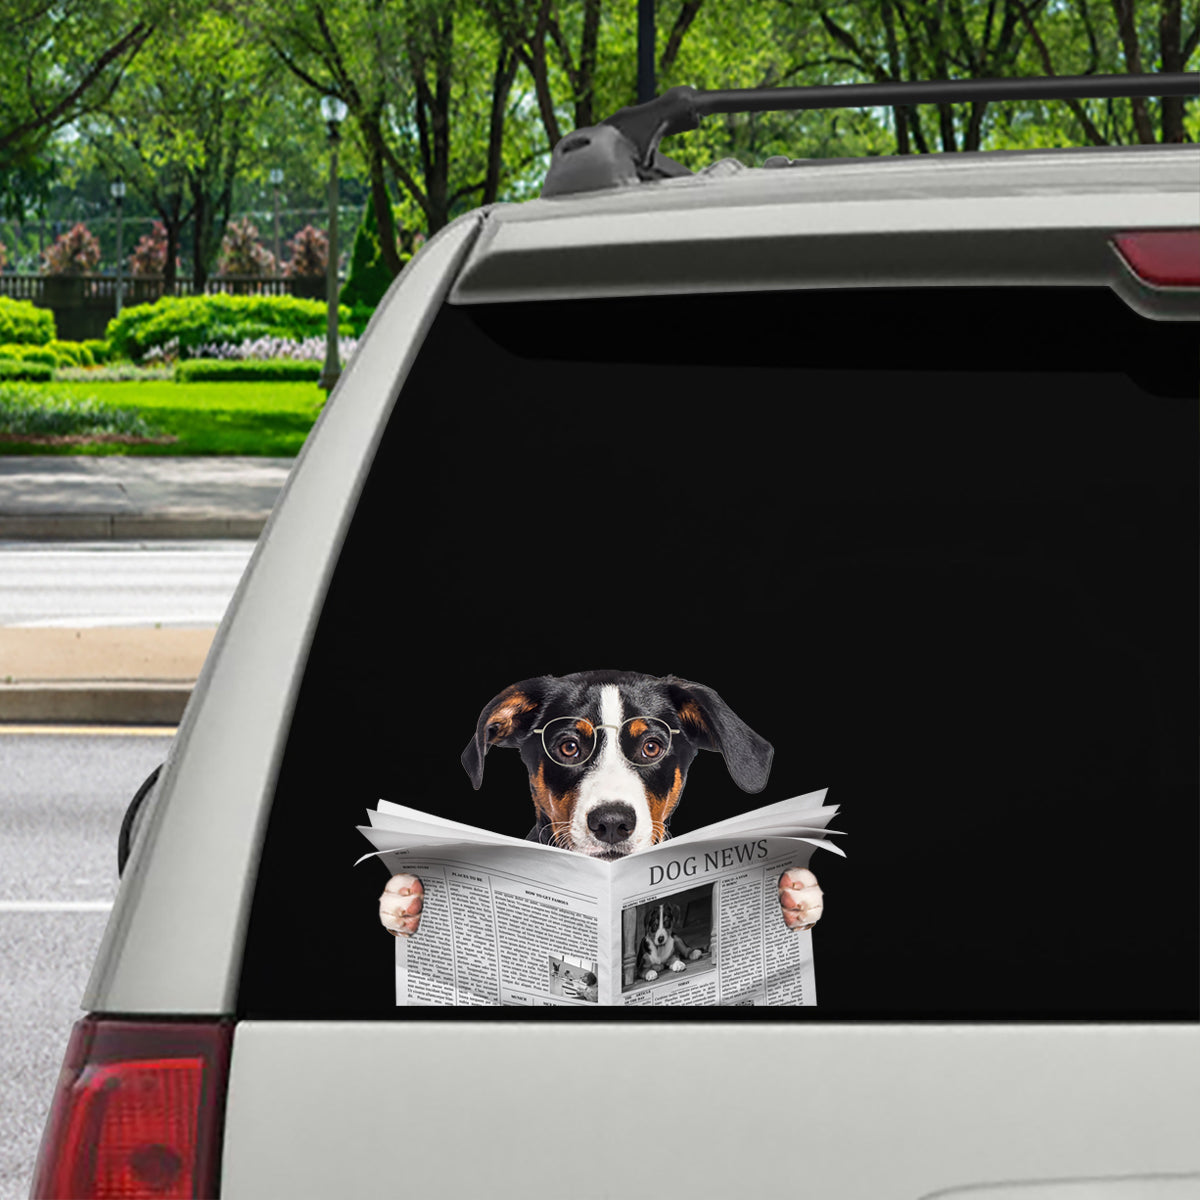 Avez-vous lu les nouvelles aujourd'hui - Appenzeller Sennenhund Autocollant de voiture/porte/réfrigérateur/ordinateur portable V1